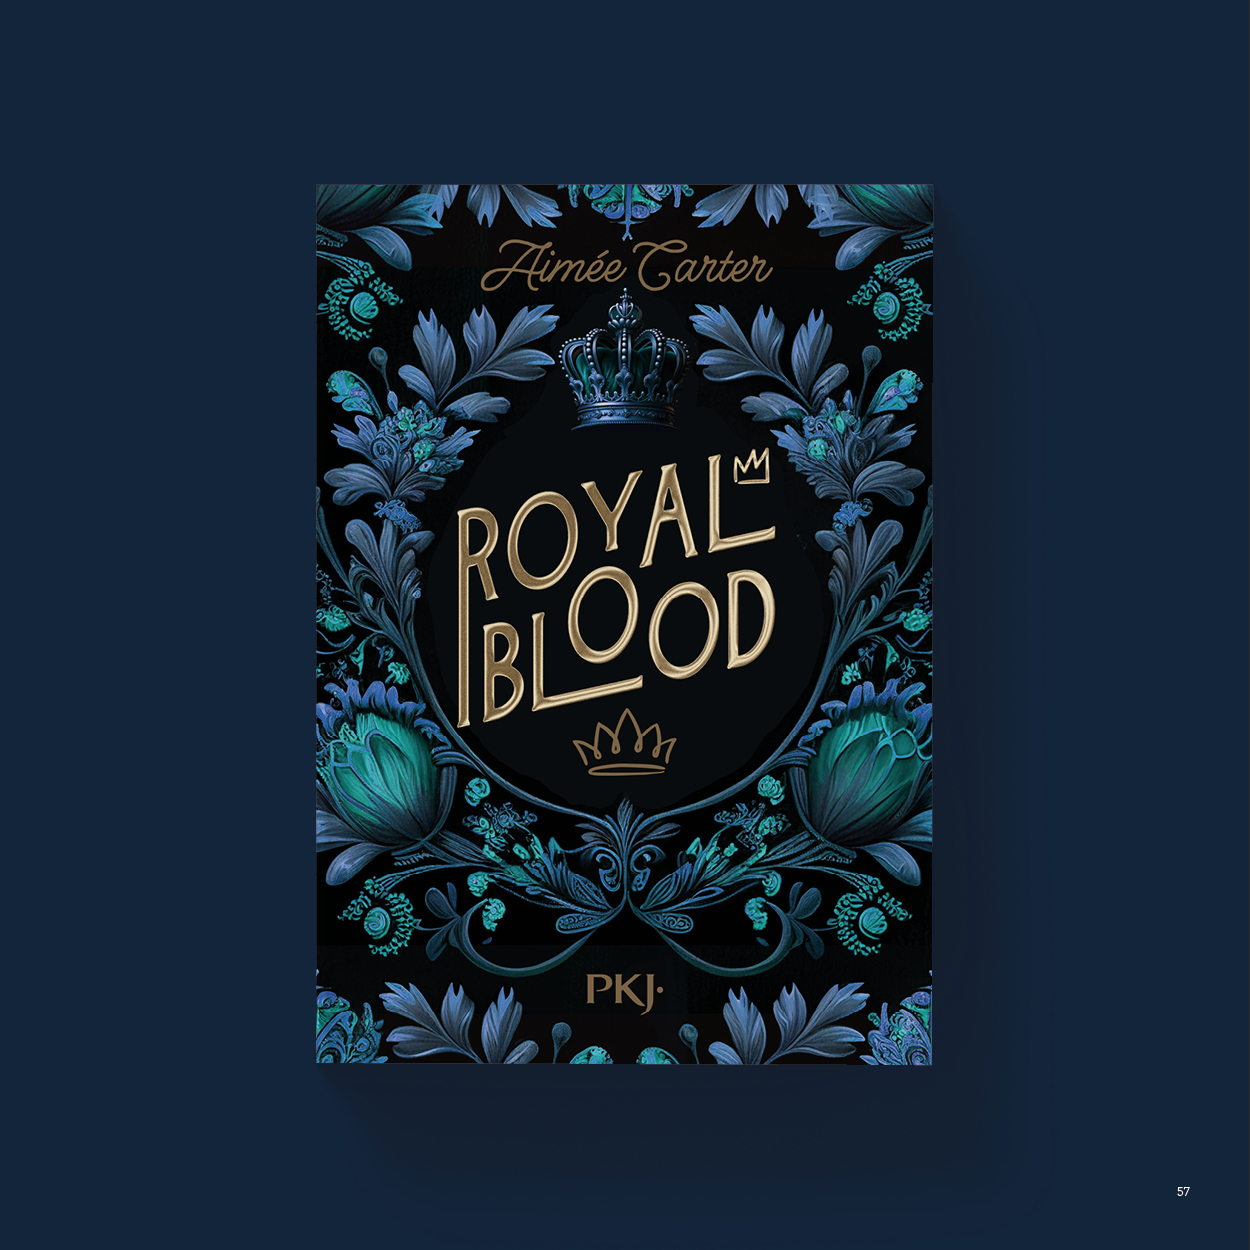 Vue_Royal_blood_57